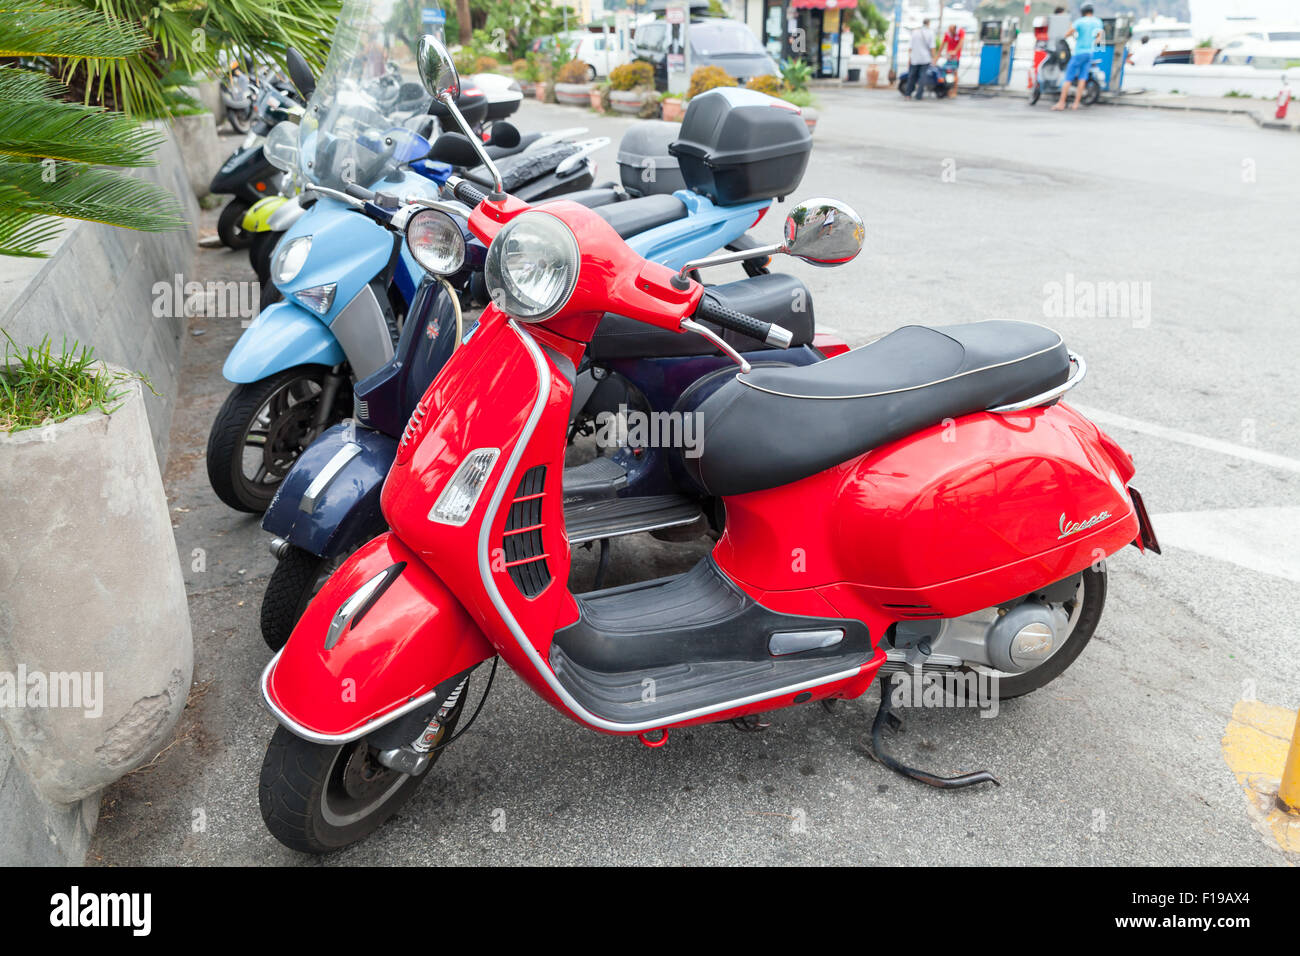 Gaeta, Italia - 15 agosto 2015: Classic Vespa scooter sta parcheggiato su una strada, vista laterale Foto Stock